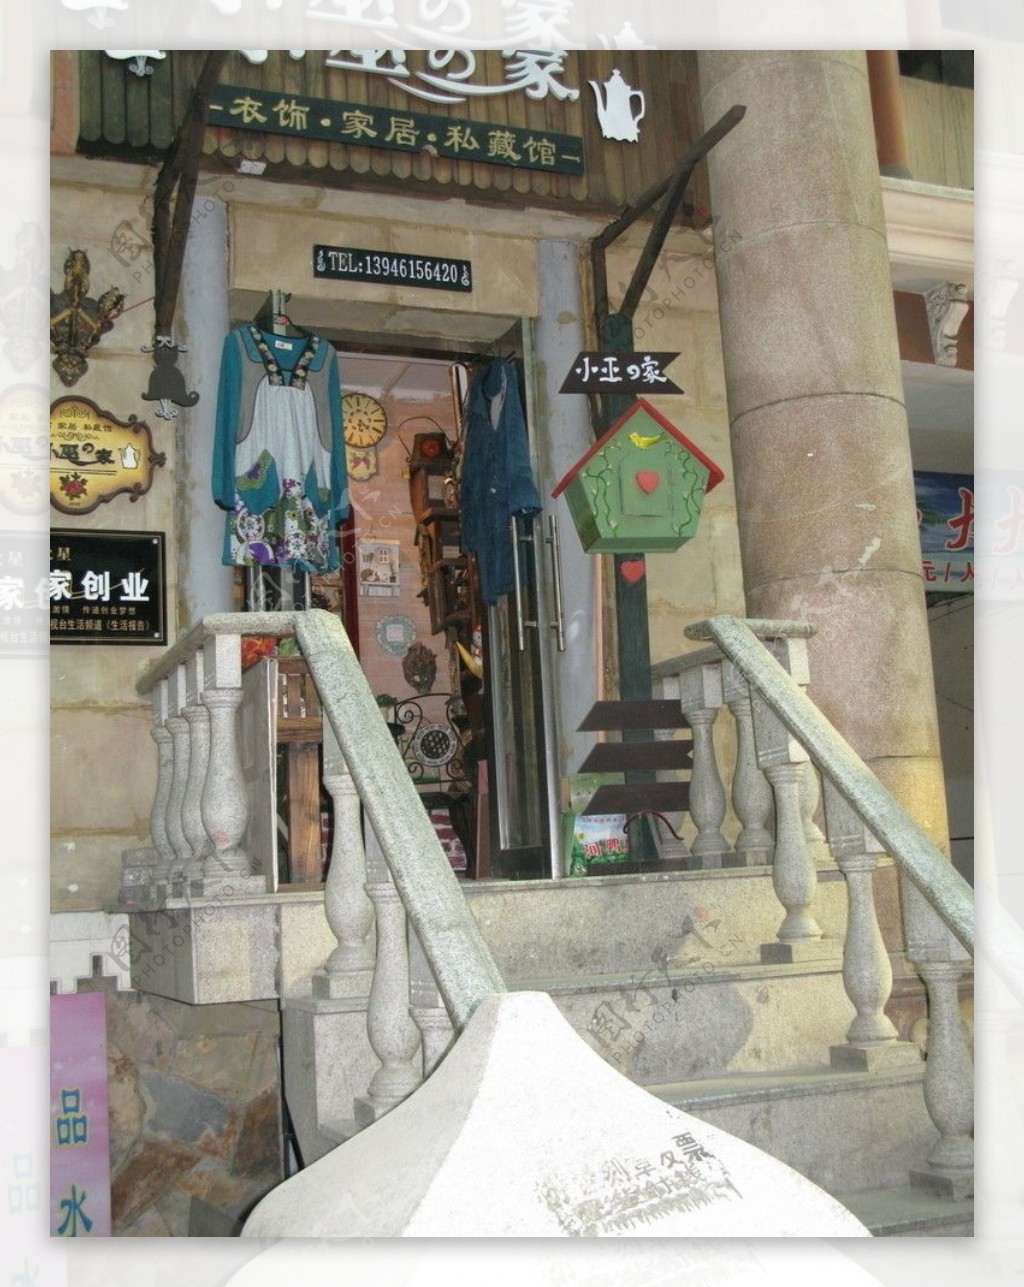 哈尔滨印度街上的特色民俗店图片